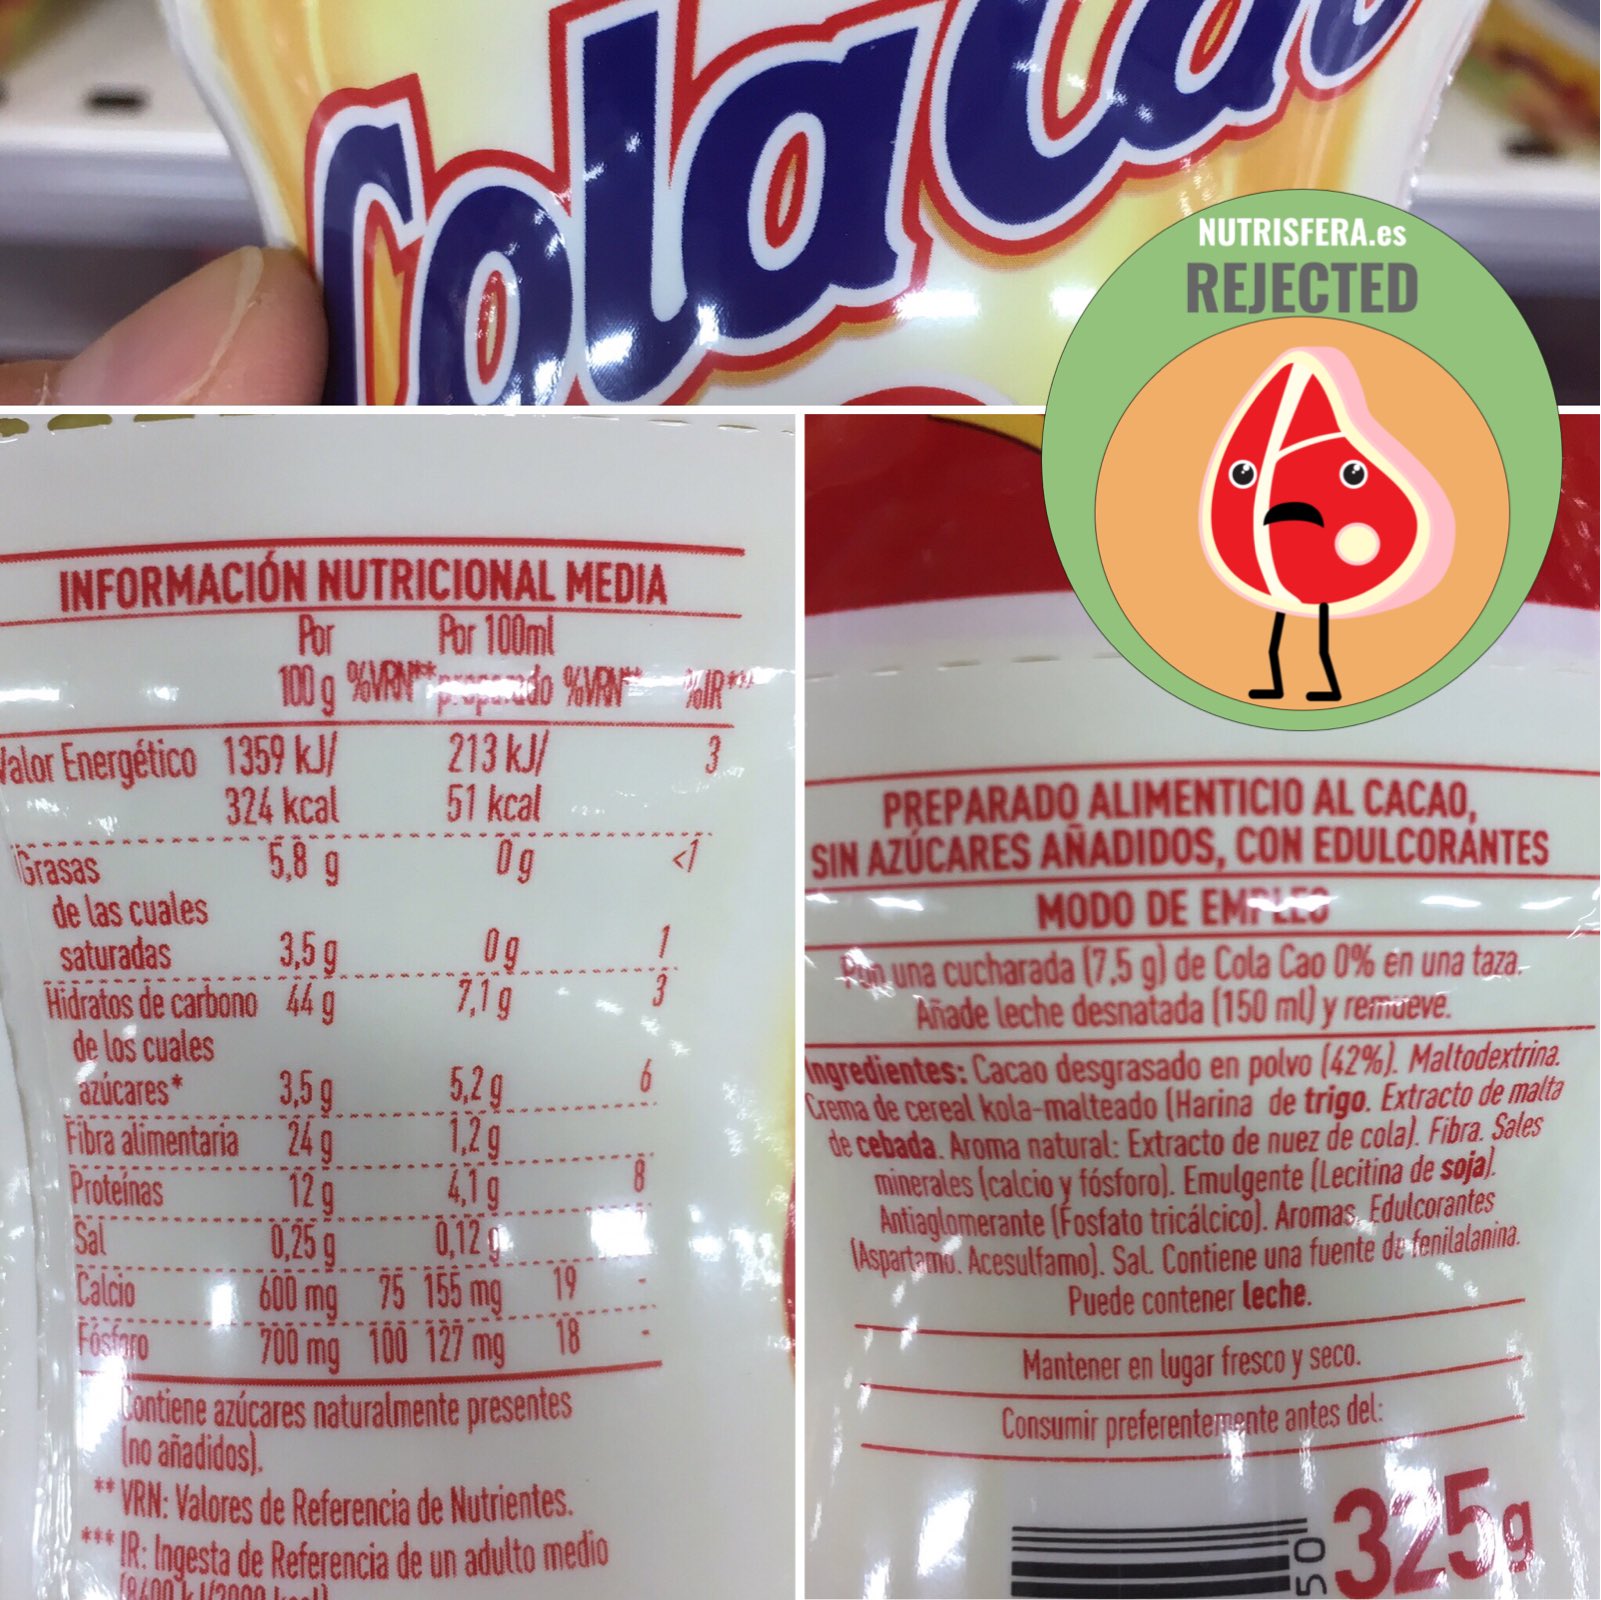 NUTRISFERA on X: ColaCao 0 azúcares añadidos 44g HC/100g producto, segundo  ingrediente #maltodextrina no mas preguntas señoría#nutrisfera_es  #nutrisfera  / X